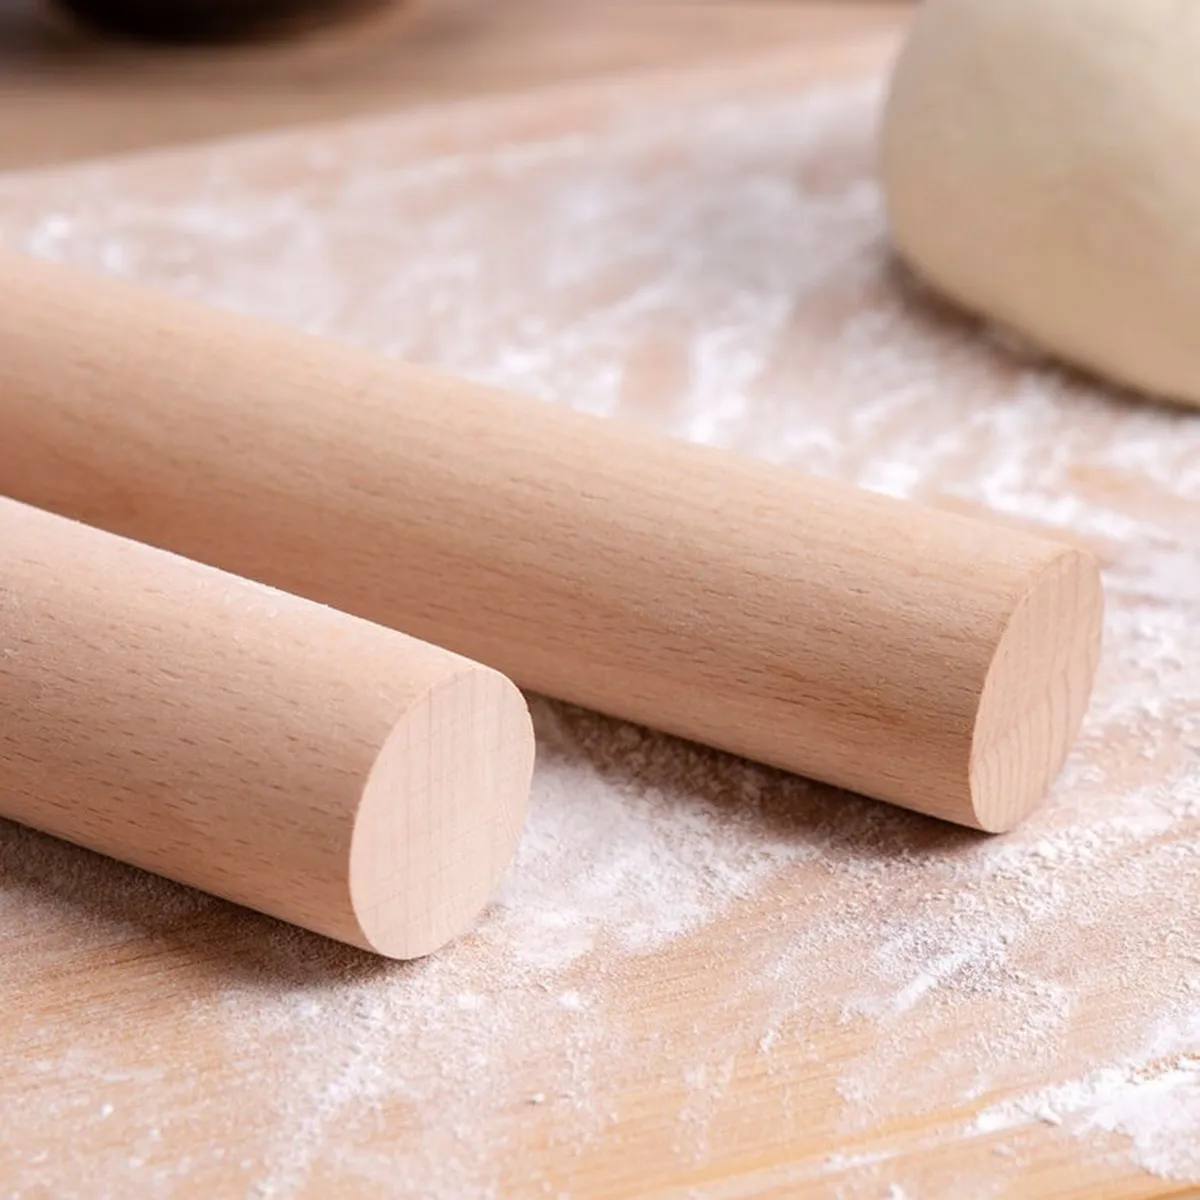 دبوس درفلة الخشب الصلب الممتاز للخبز والعجين الأصفر big image 1